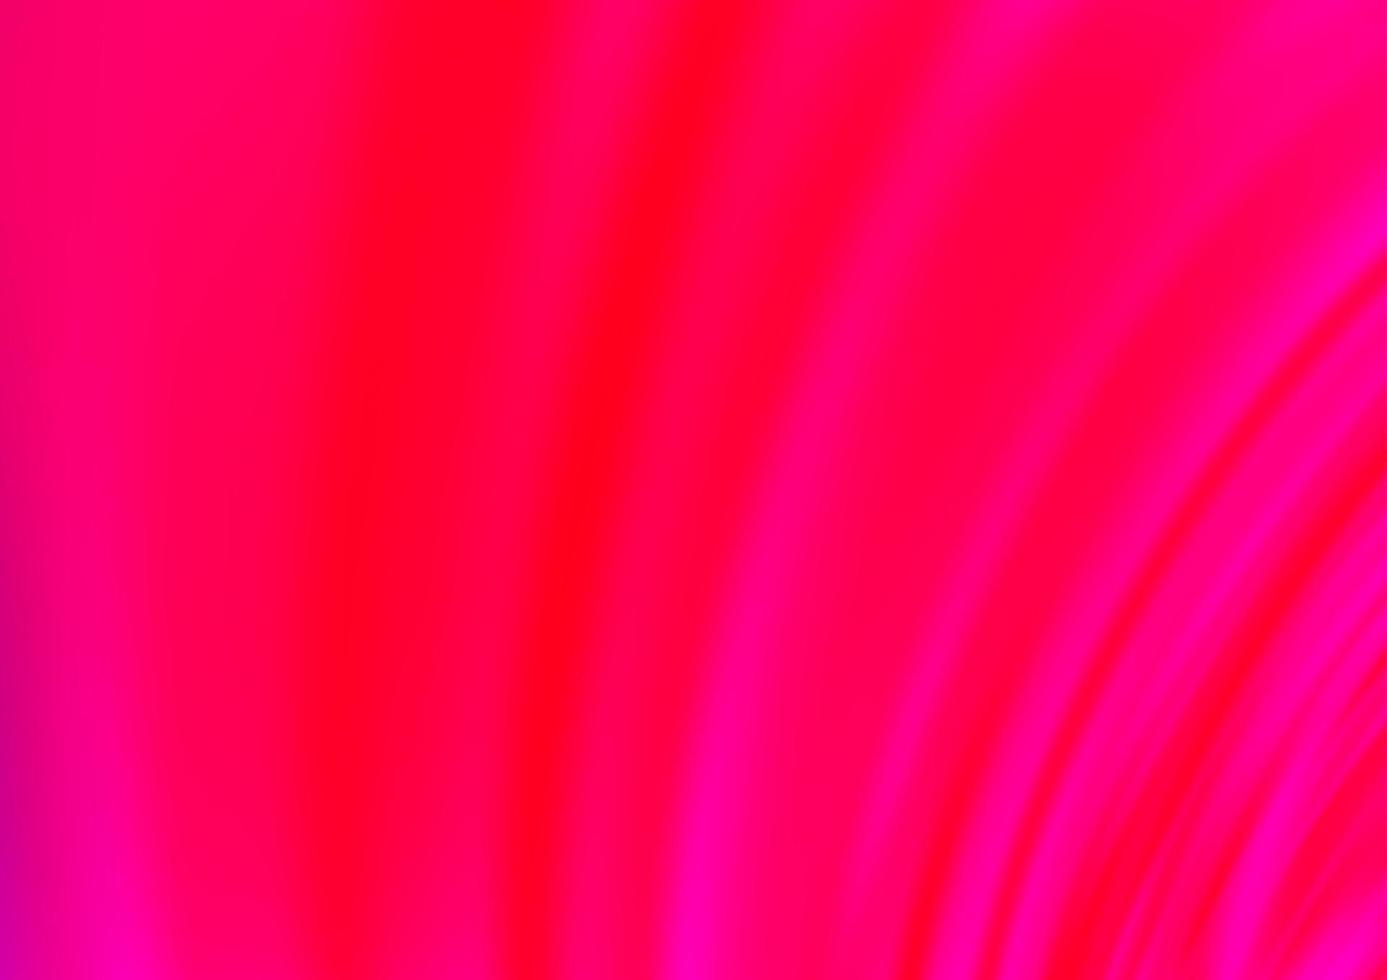 fond de vecteur violet clair, rose avec des lignes abstraites.